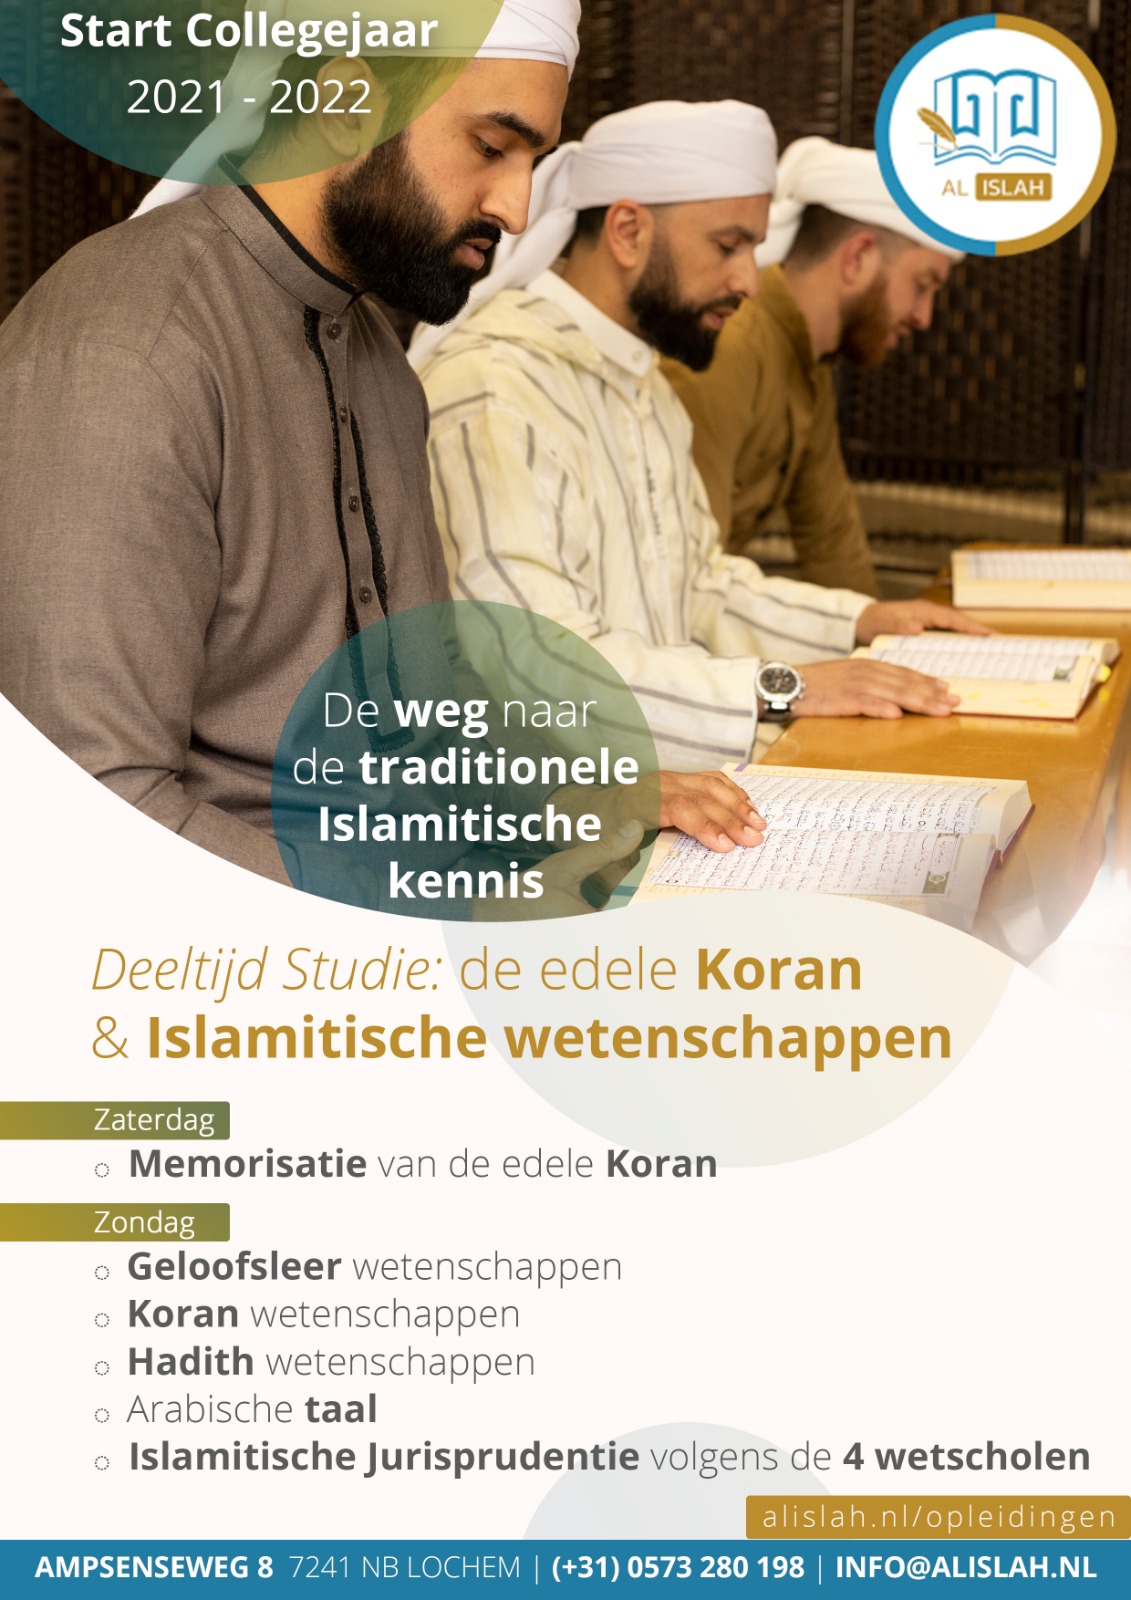 Deeltijd studie: De edele Koran & Islamitische wetenschappen